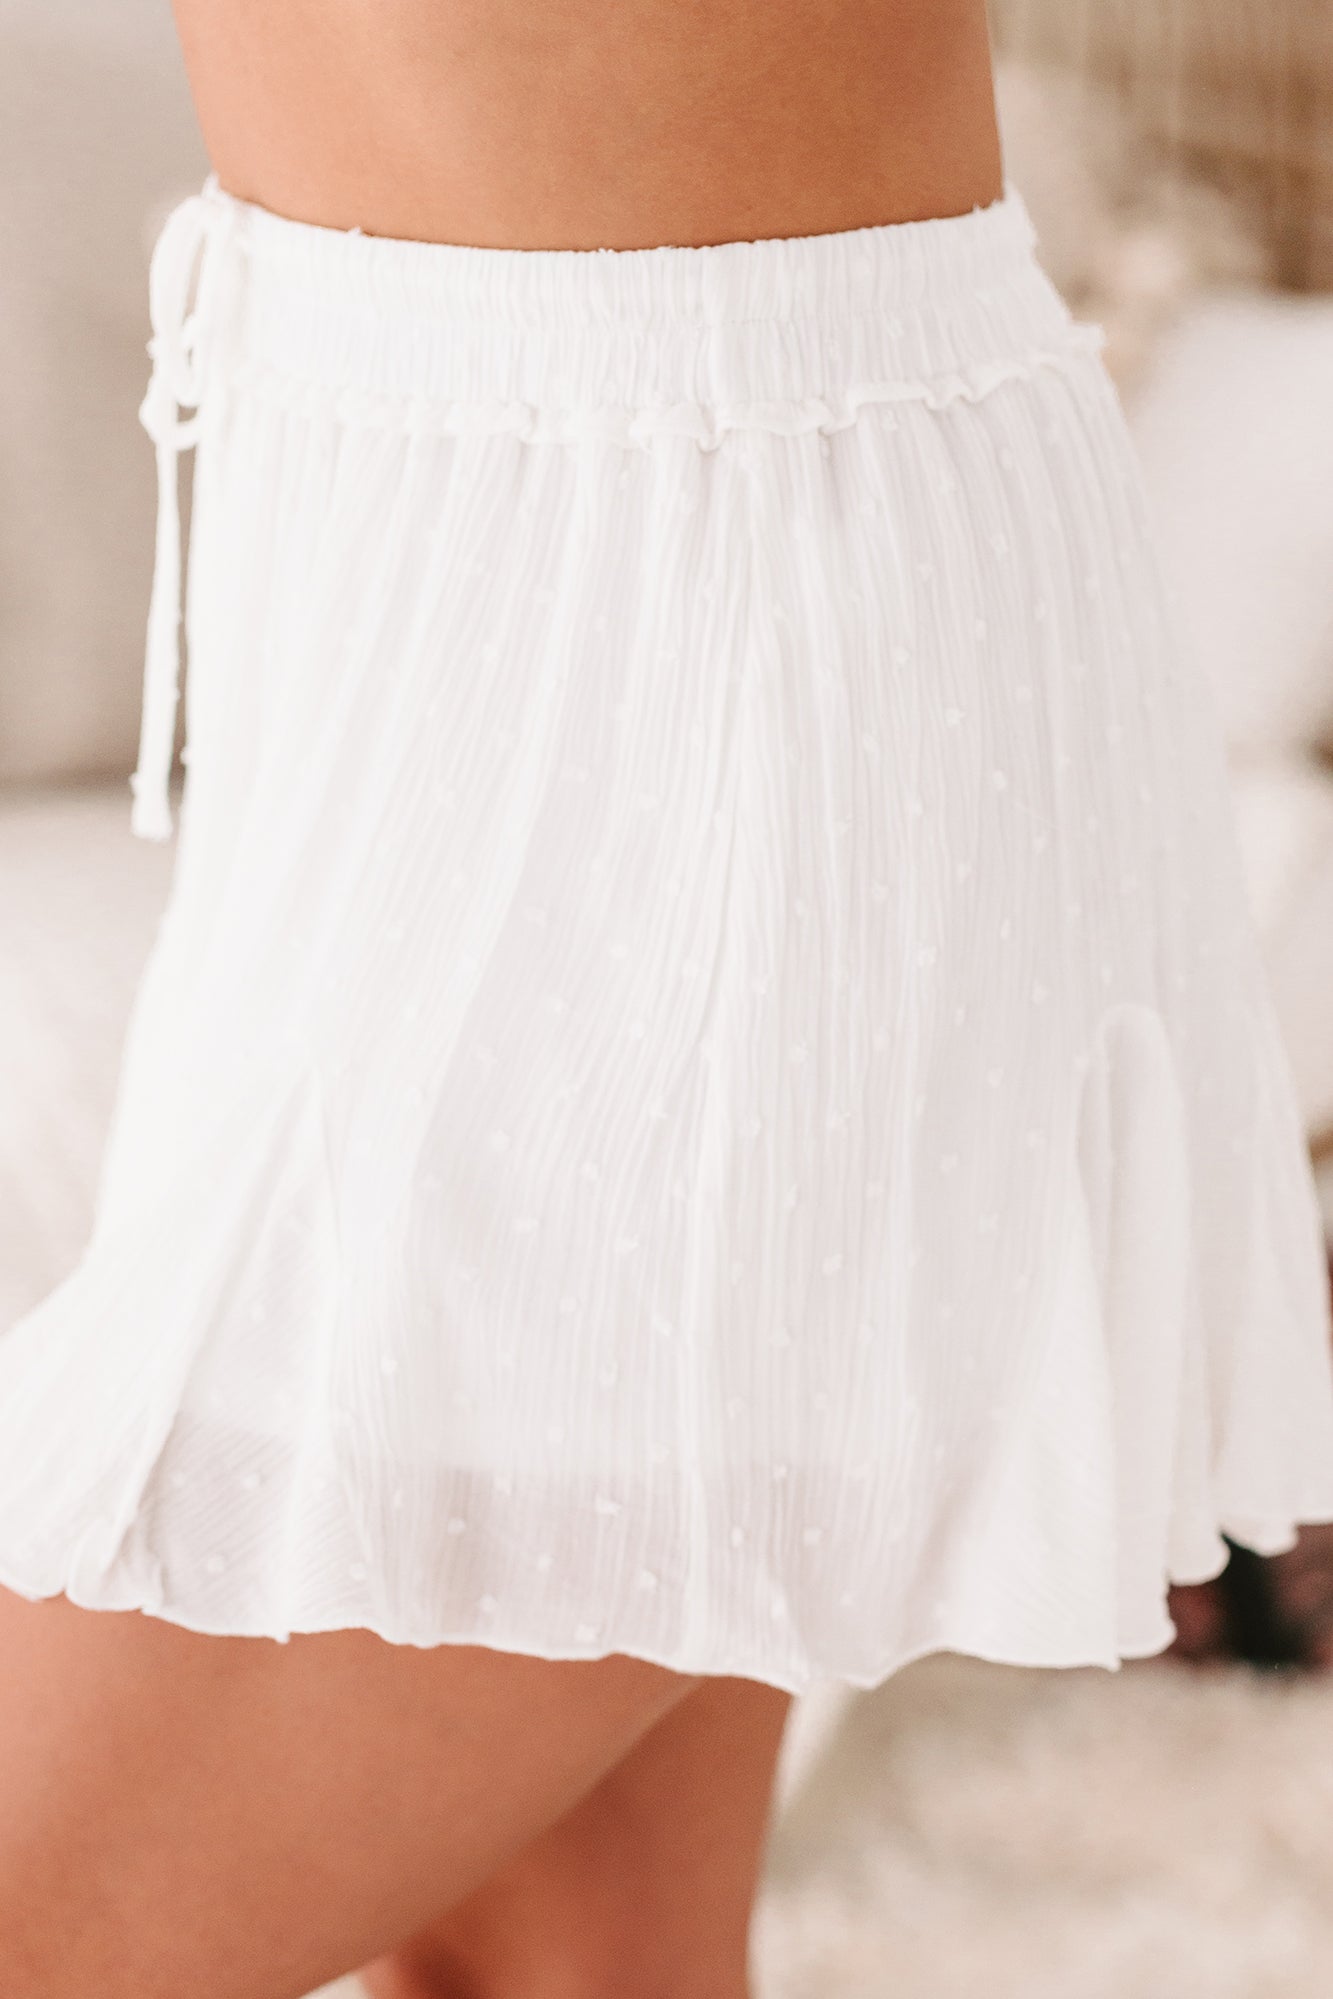 Lakin Swiss Dot Ruffled Mini Skirt (Off White) - NanaMacs